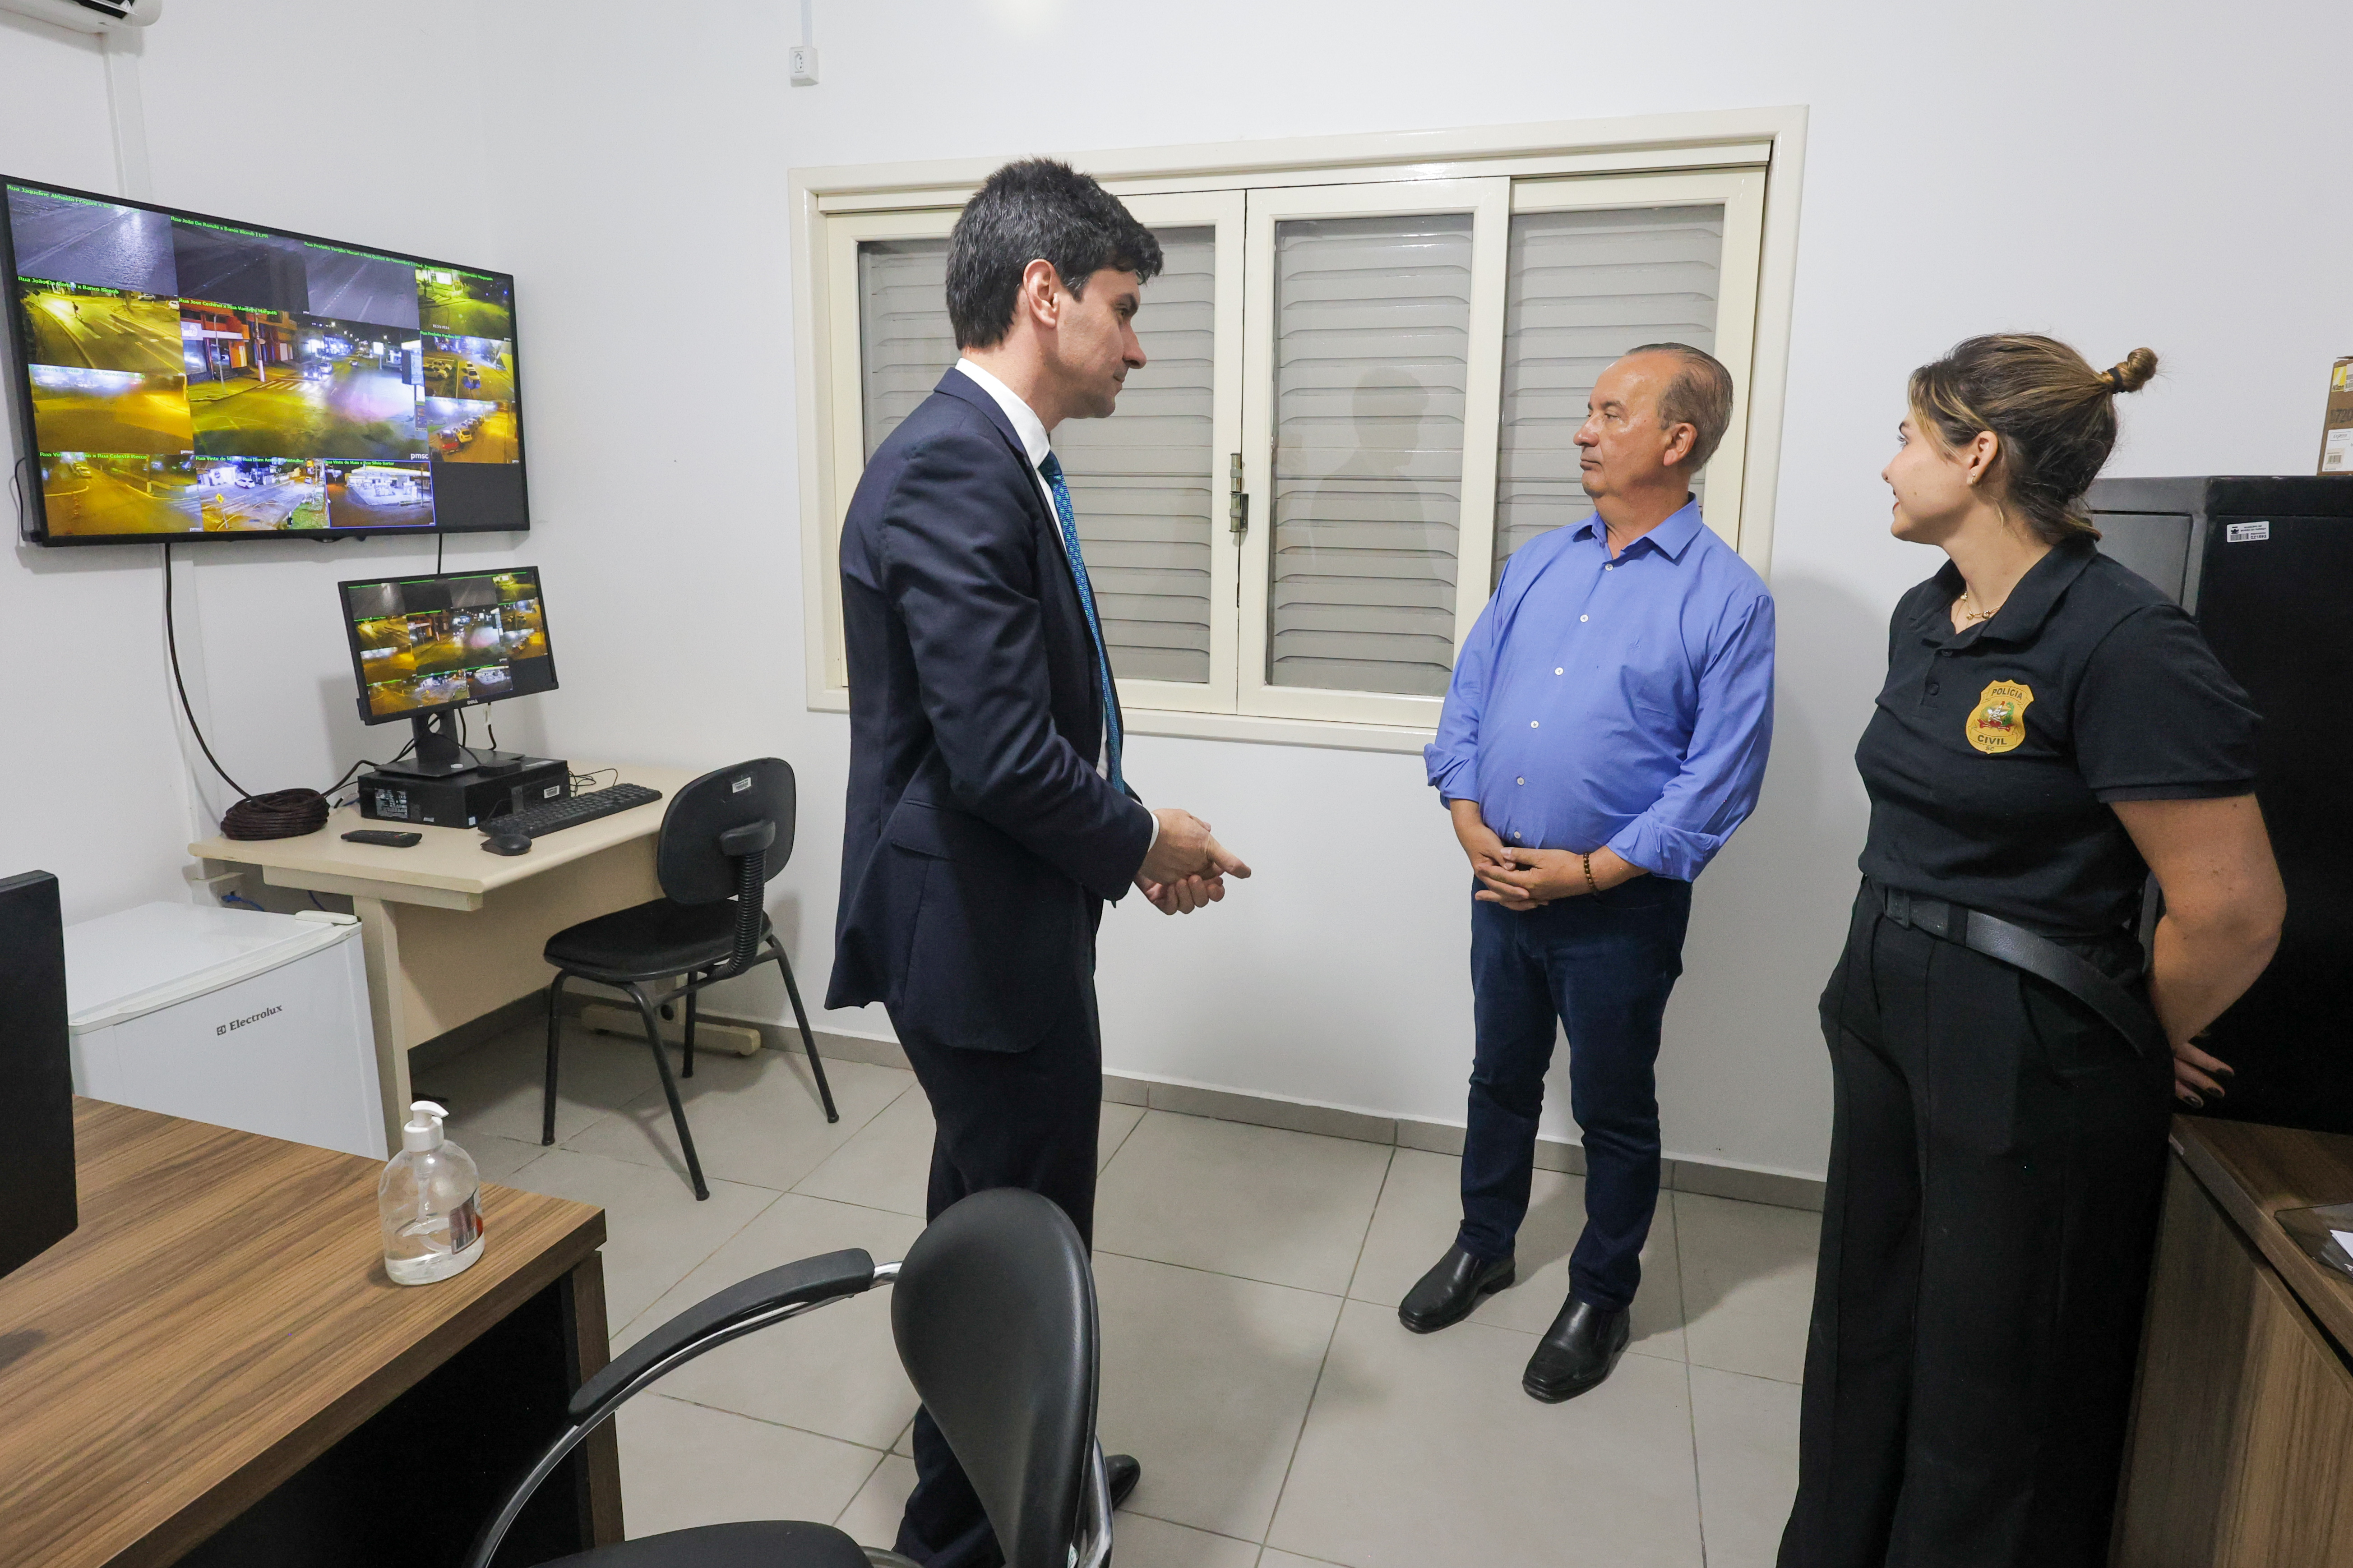 Governador inaugura nova sede da Delegacia de Polícia de Morro da Fumaça